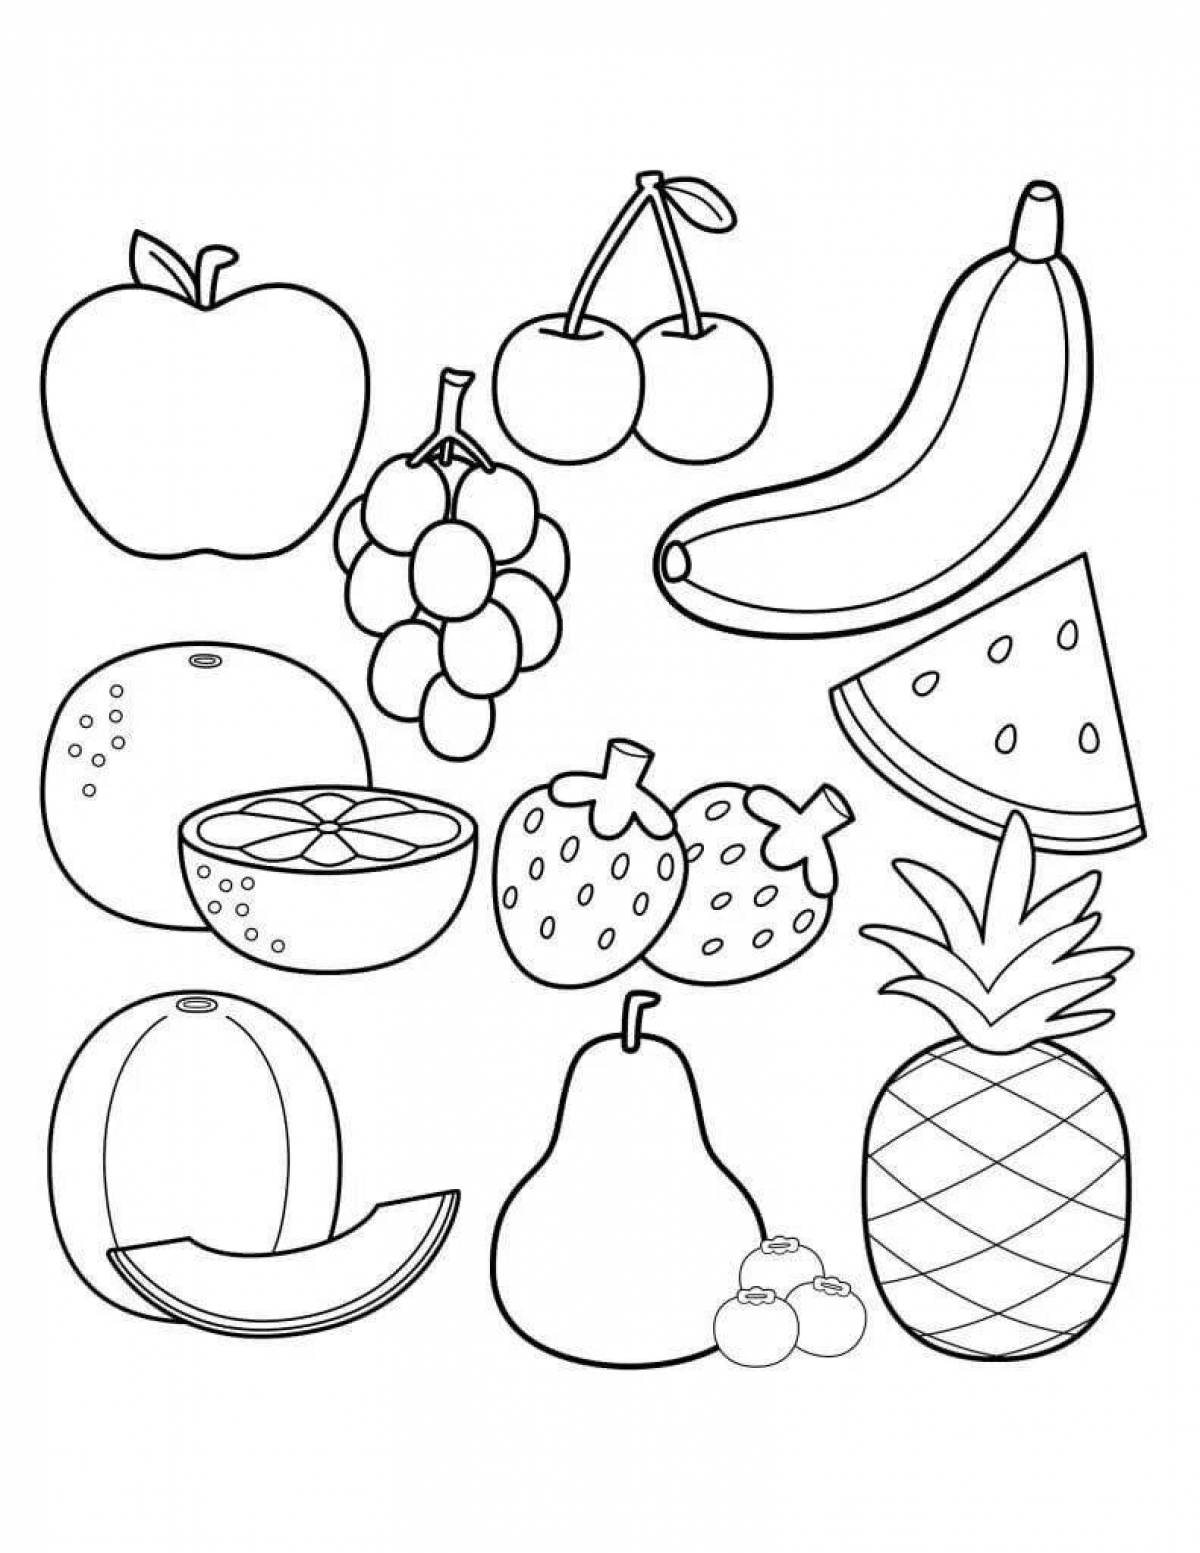 Цветная раскраска здоровые фрукты и овощи